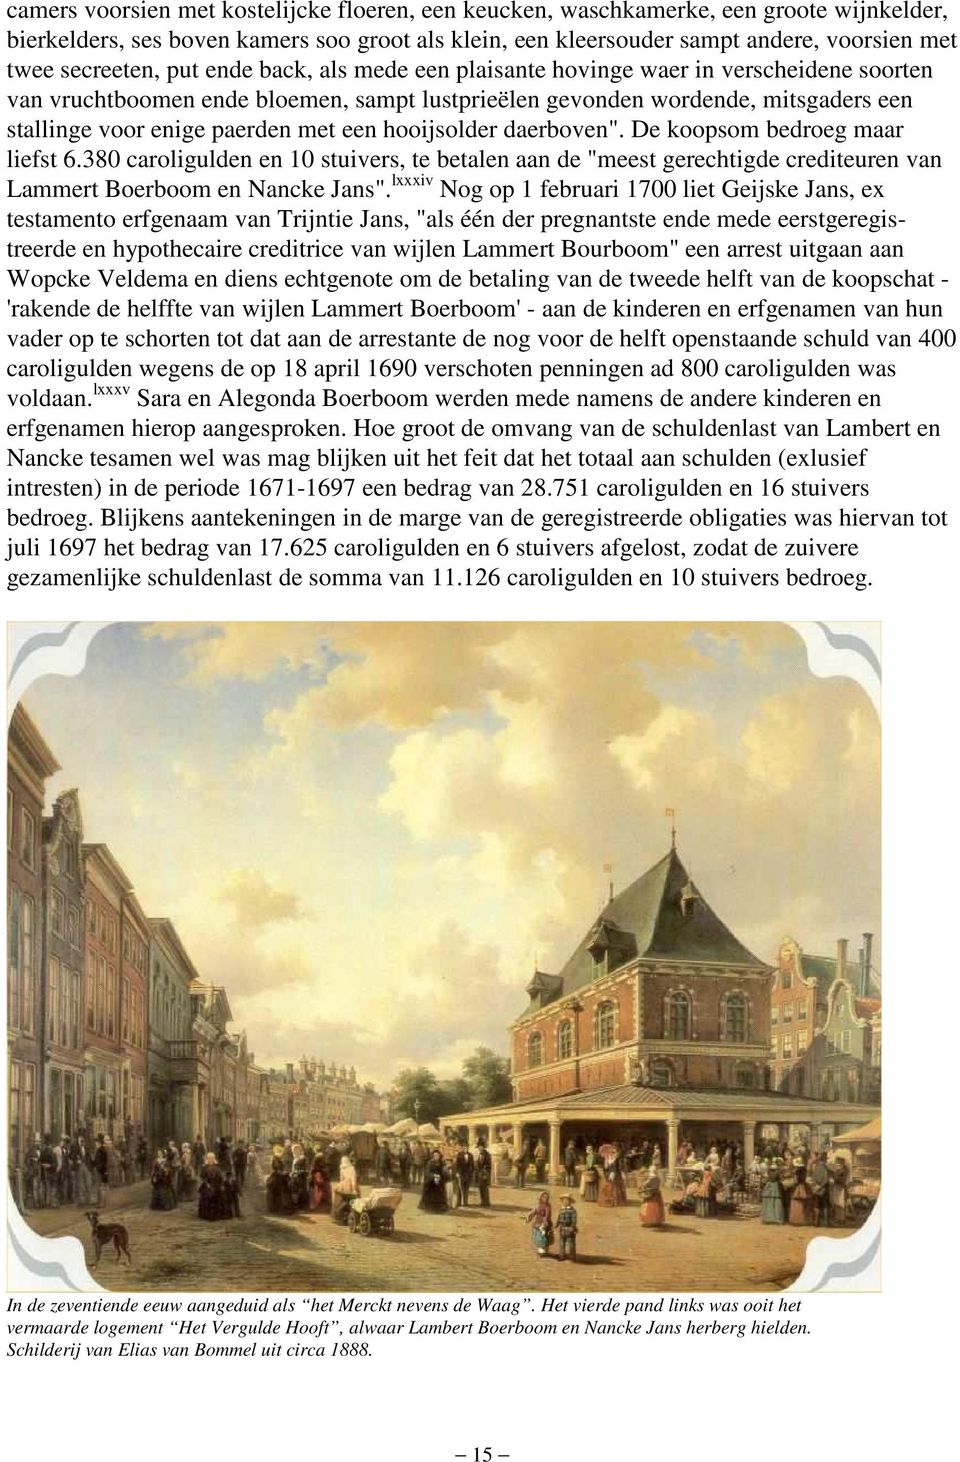 met een hooijsolder daerboven". De koopsom bedroeg maar liefst 6.380 caroligulden en 10 stuivers, te betalen aan de "meest gerechtigde crediteuren van Lammert Boerboom en Nancke Jans".